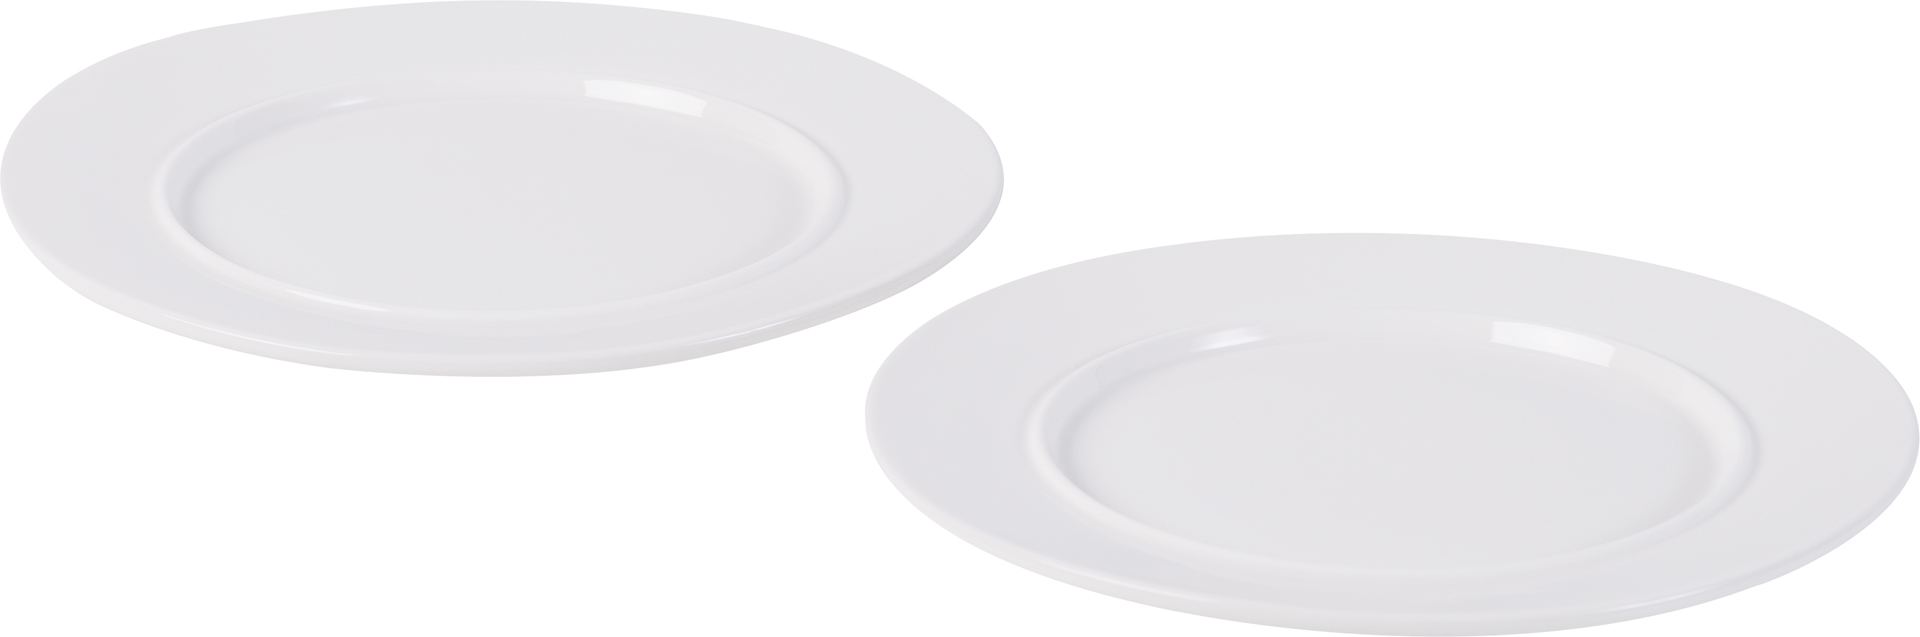 Medium plate Tassel - set of 2pcs.